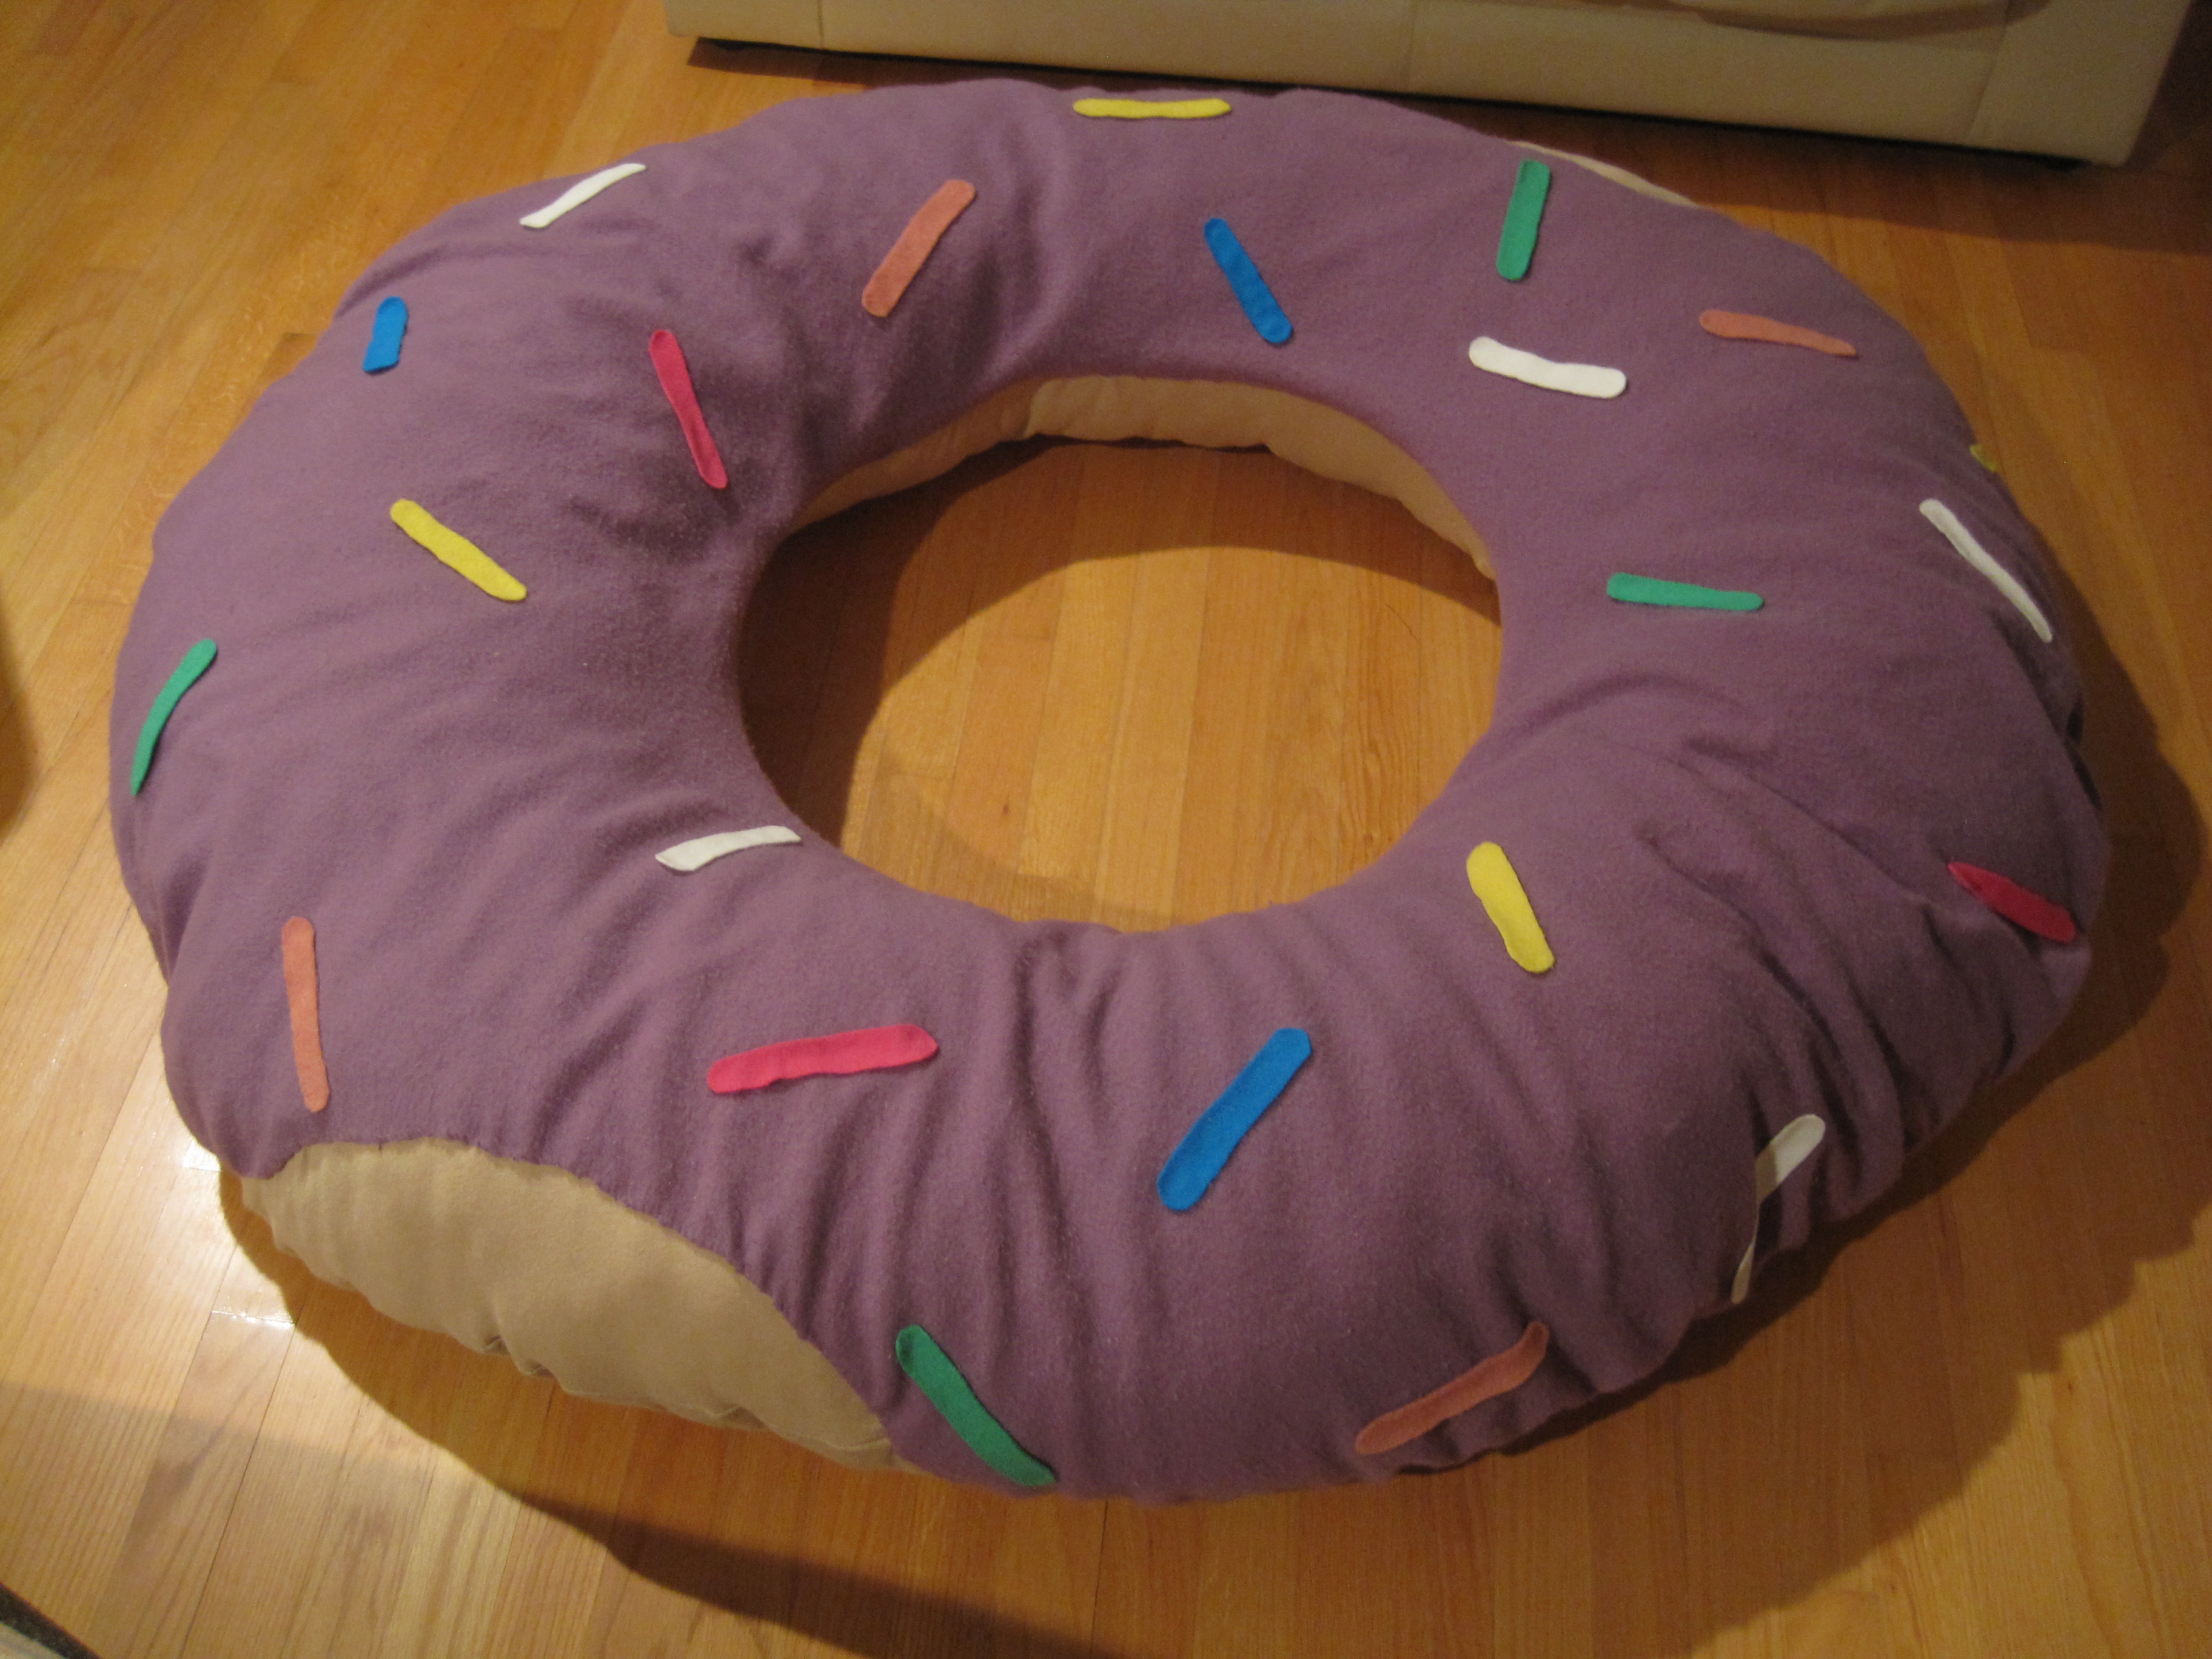 Decorative Pillows Donuts Food, Pillow Donut Chocolates